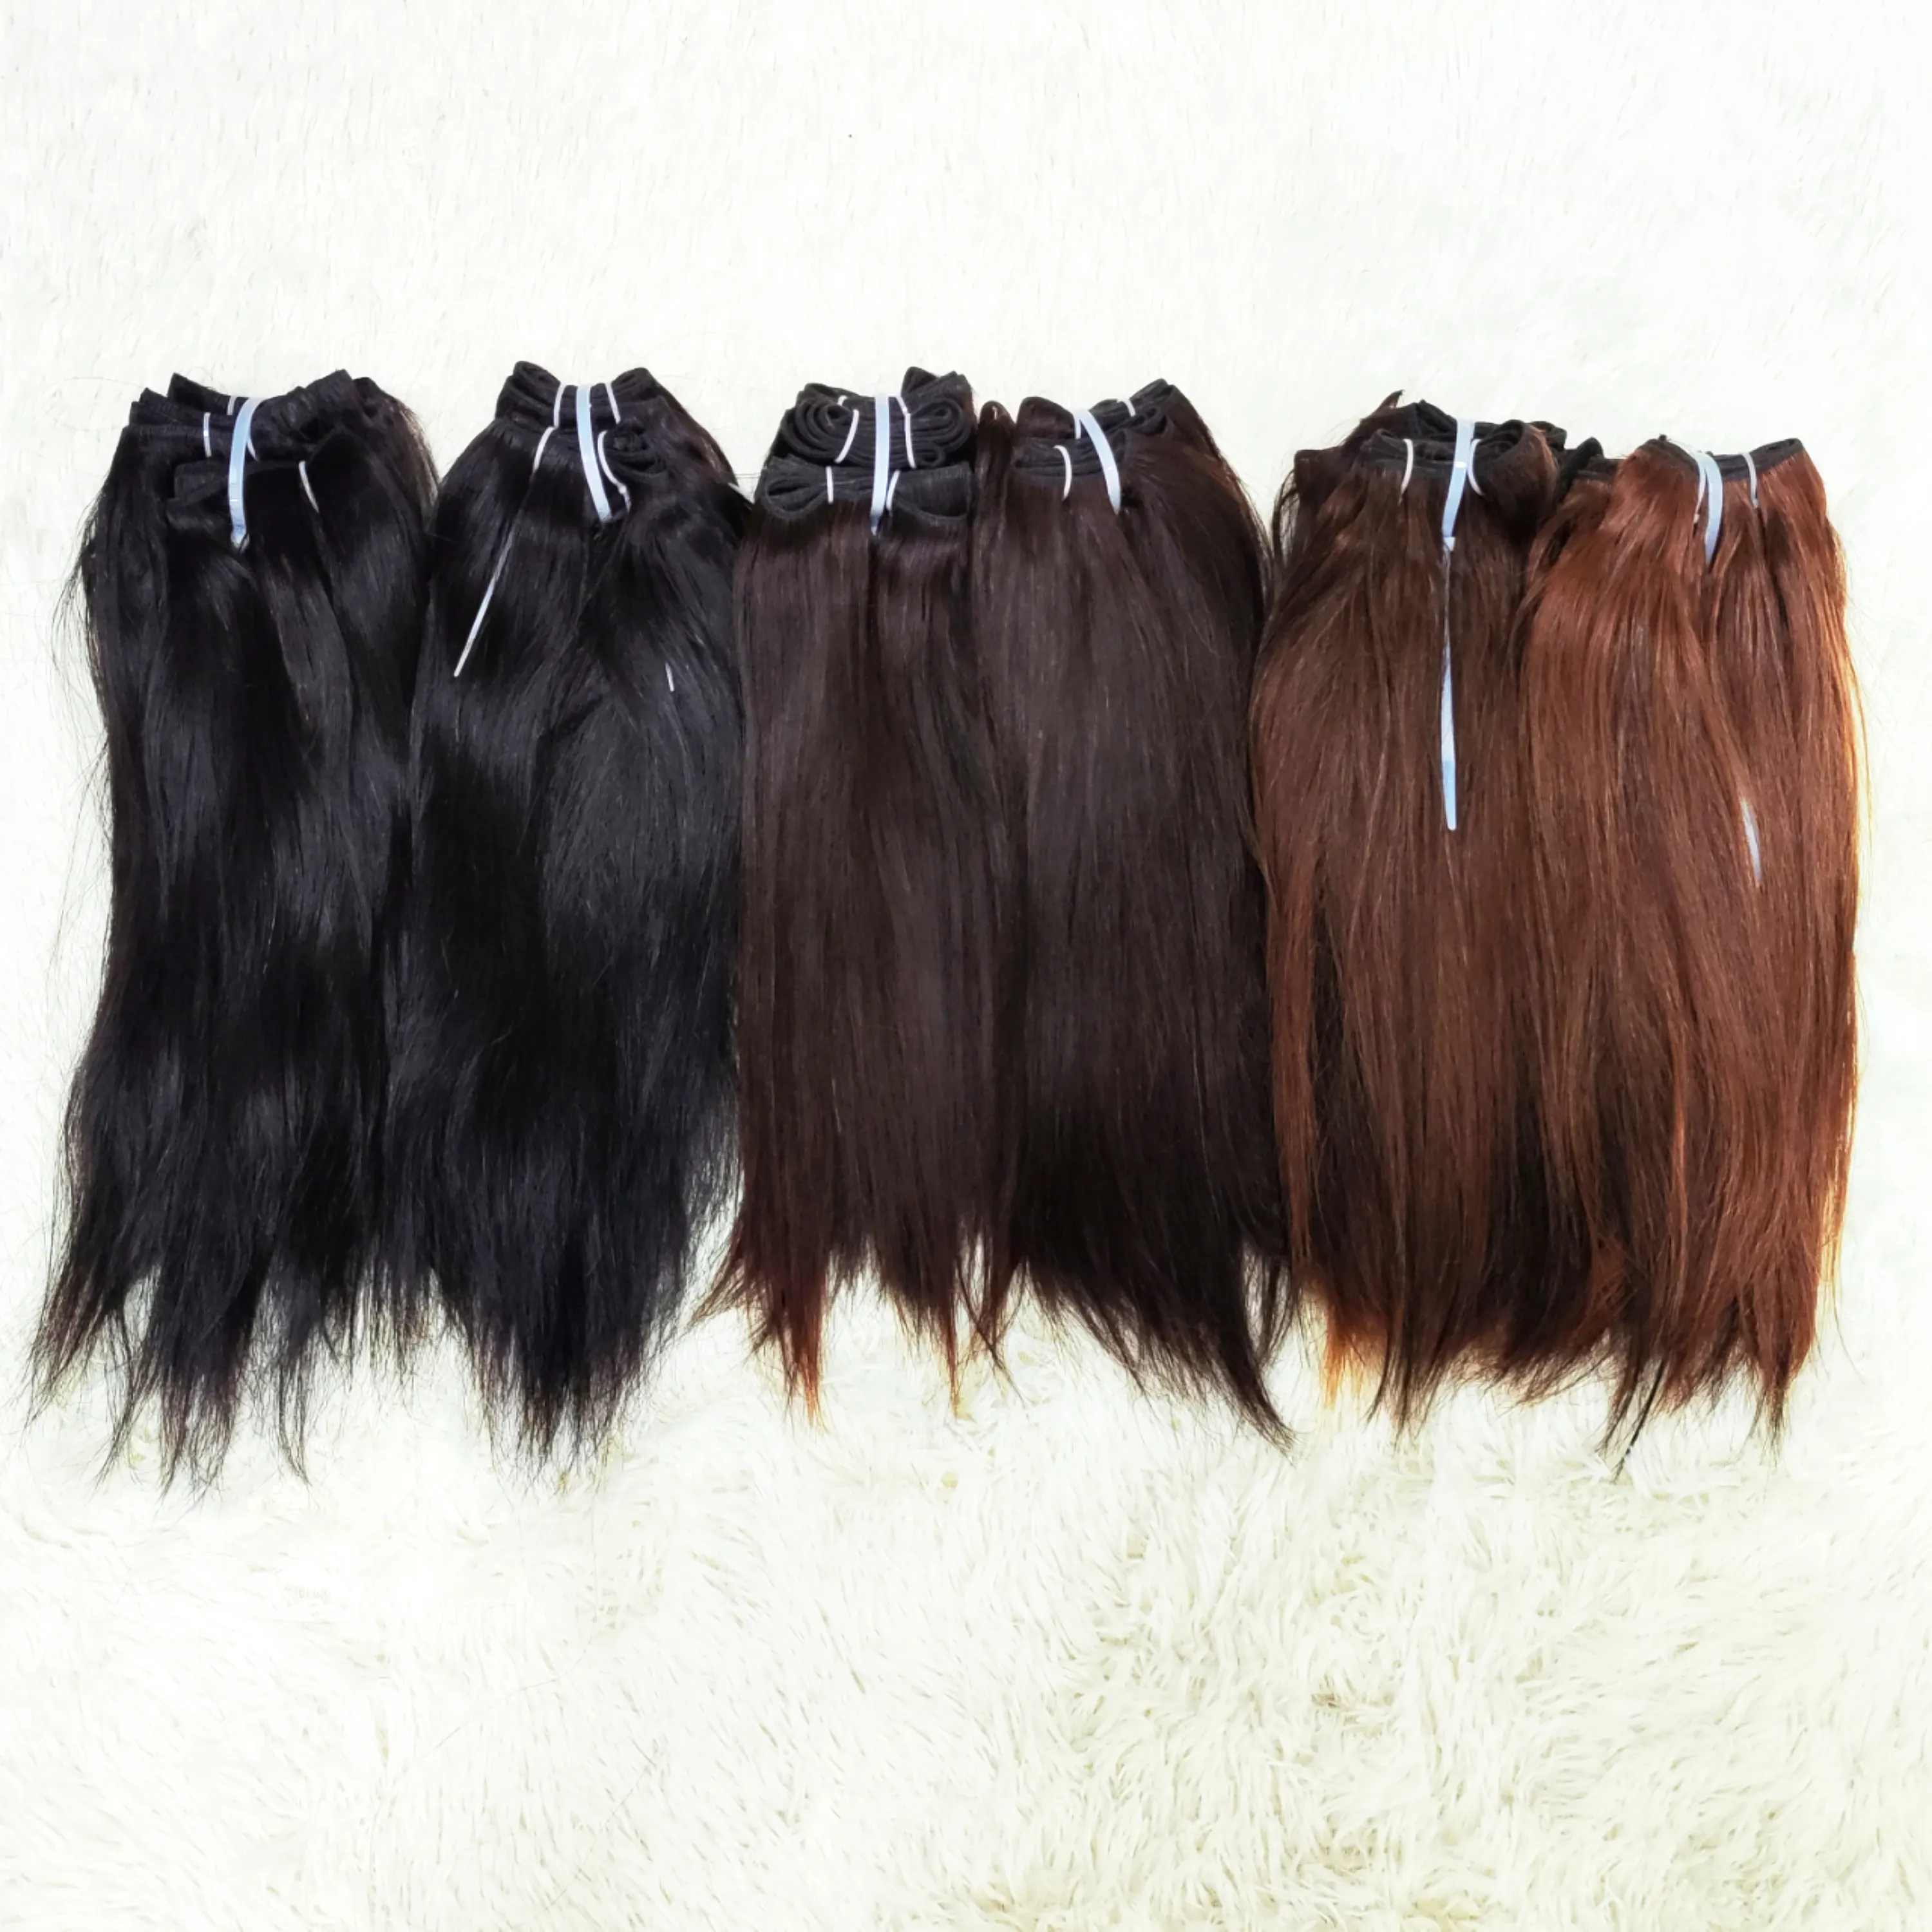 Letsfly Original Haar Seidig Gerade Peruanische Jungfrau Haar Großhandel Mix Braun Gelb Farbe Für Schwarze Frau Kostenloser Versand